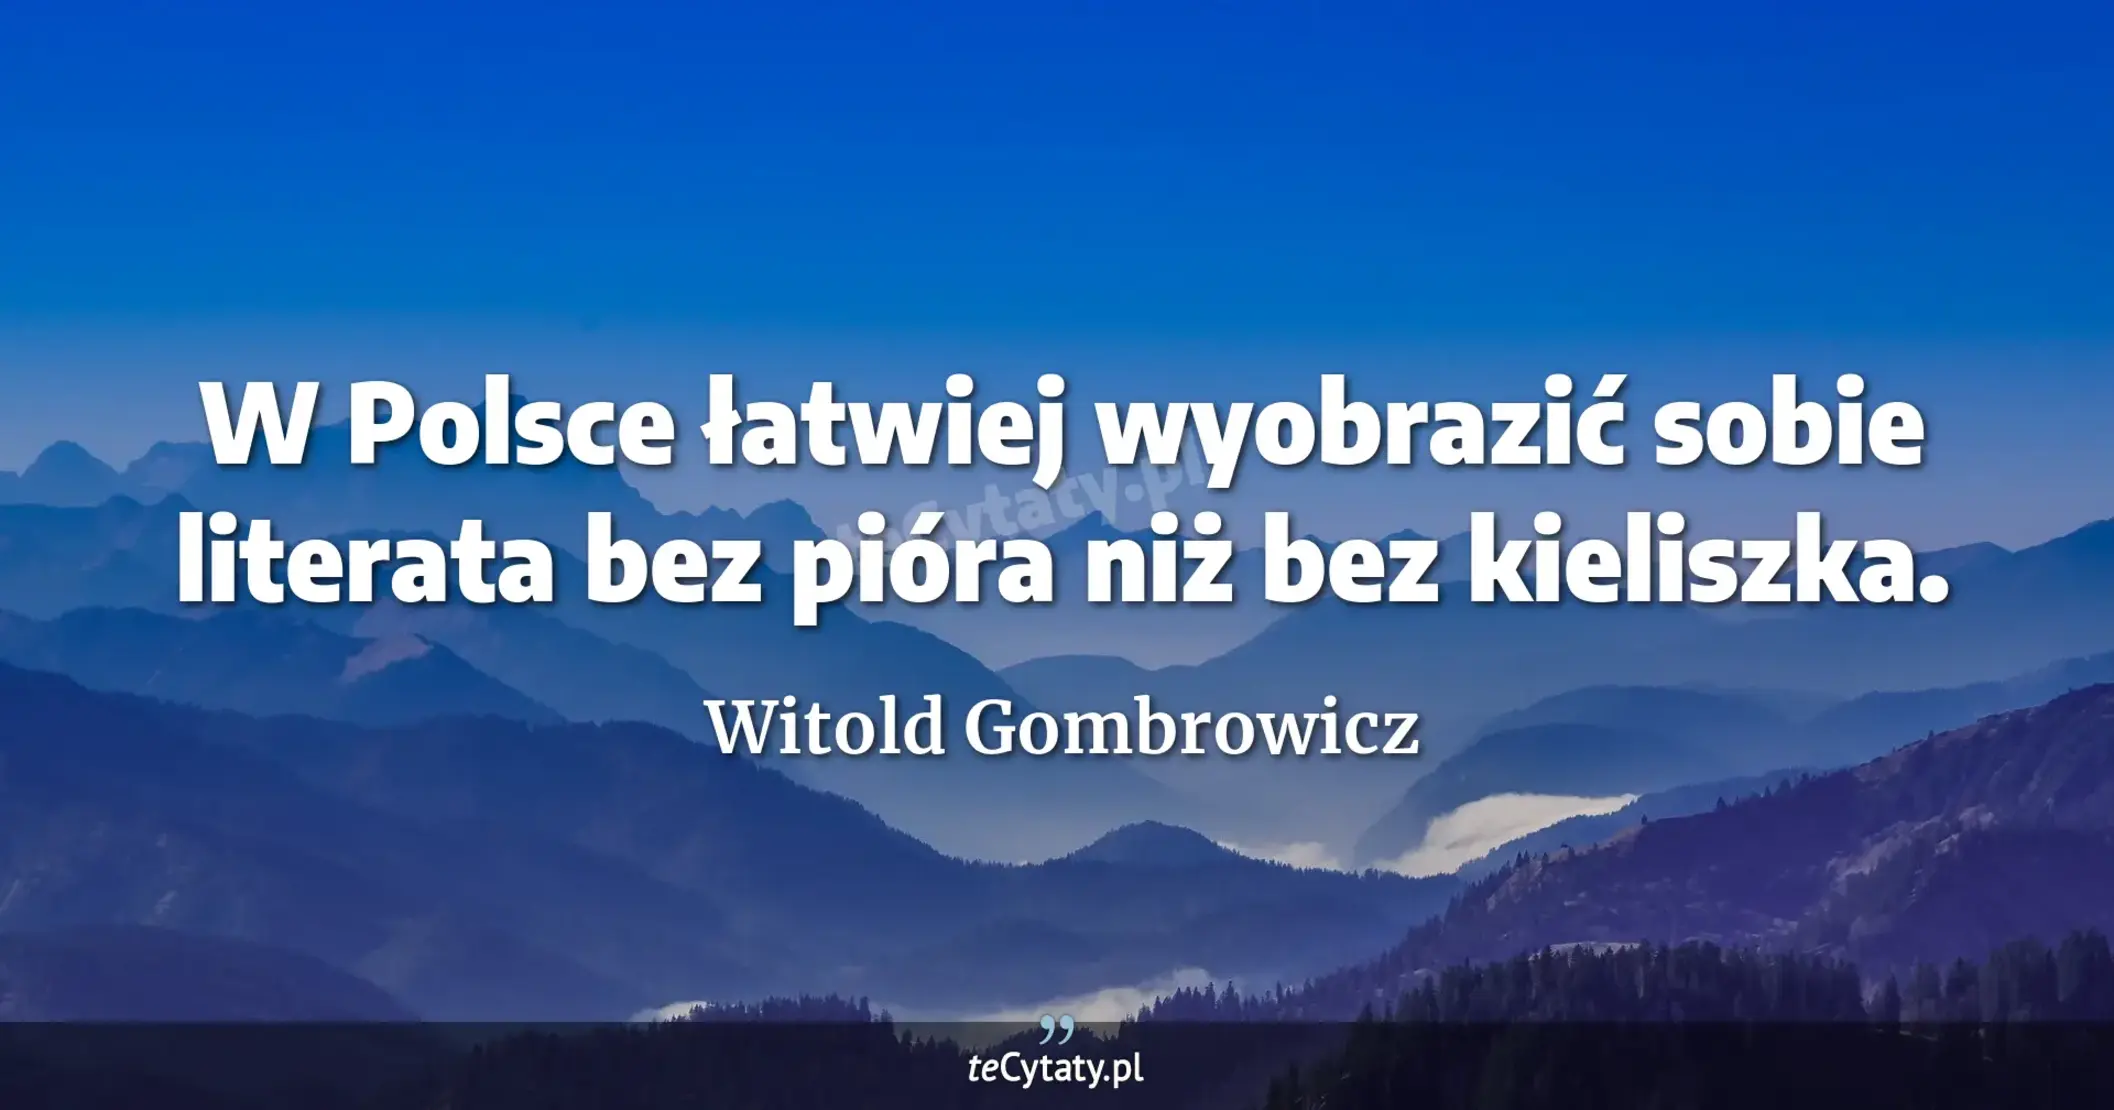 W Polsce łatwiej wyobrazić sobie literata bez pióra niż bez kieliszka. - Witold Gombrowicz